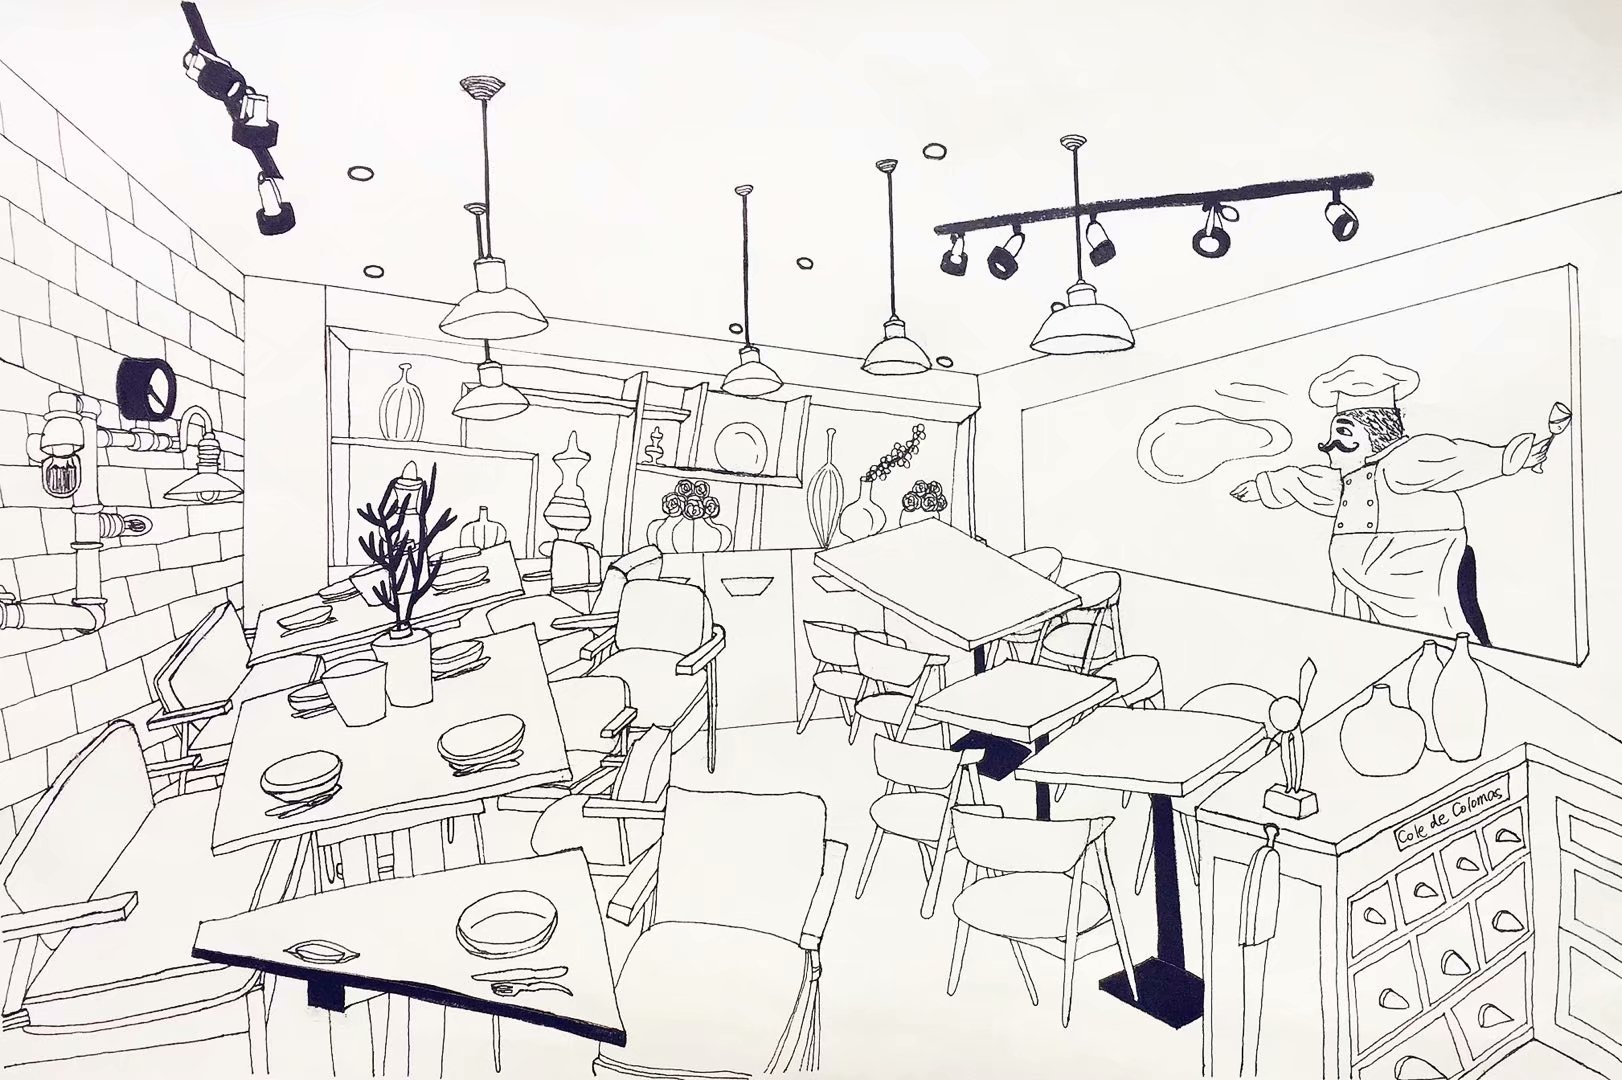 咖啡店室内设计,风景插画与自拍一张